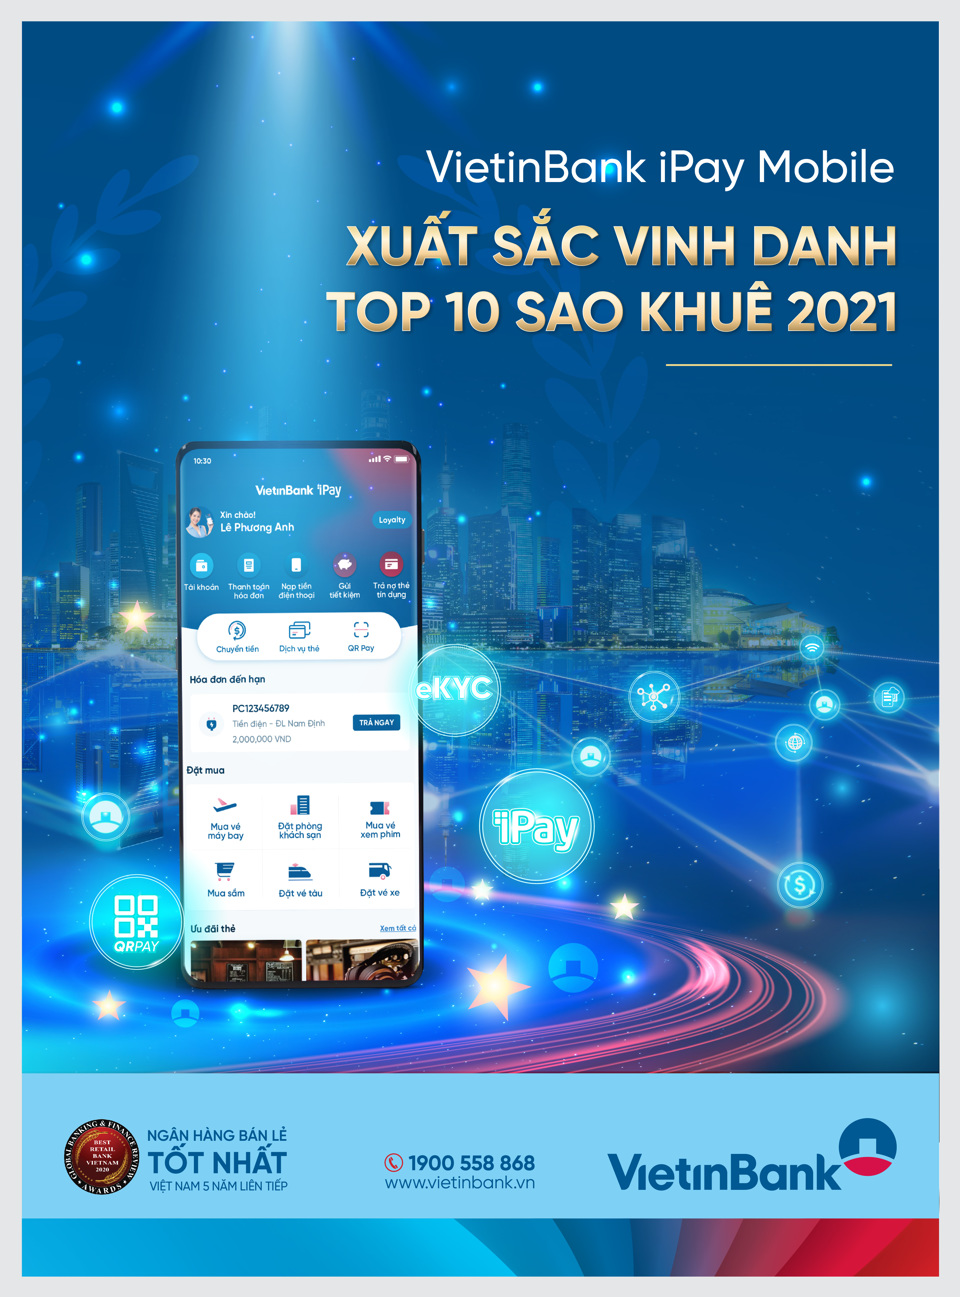 VietinBank iPay Mobile nhận giải thưởng uy tín - Ảnh 2